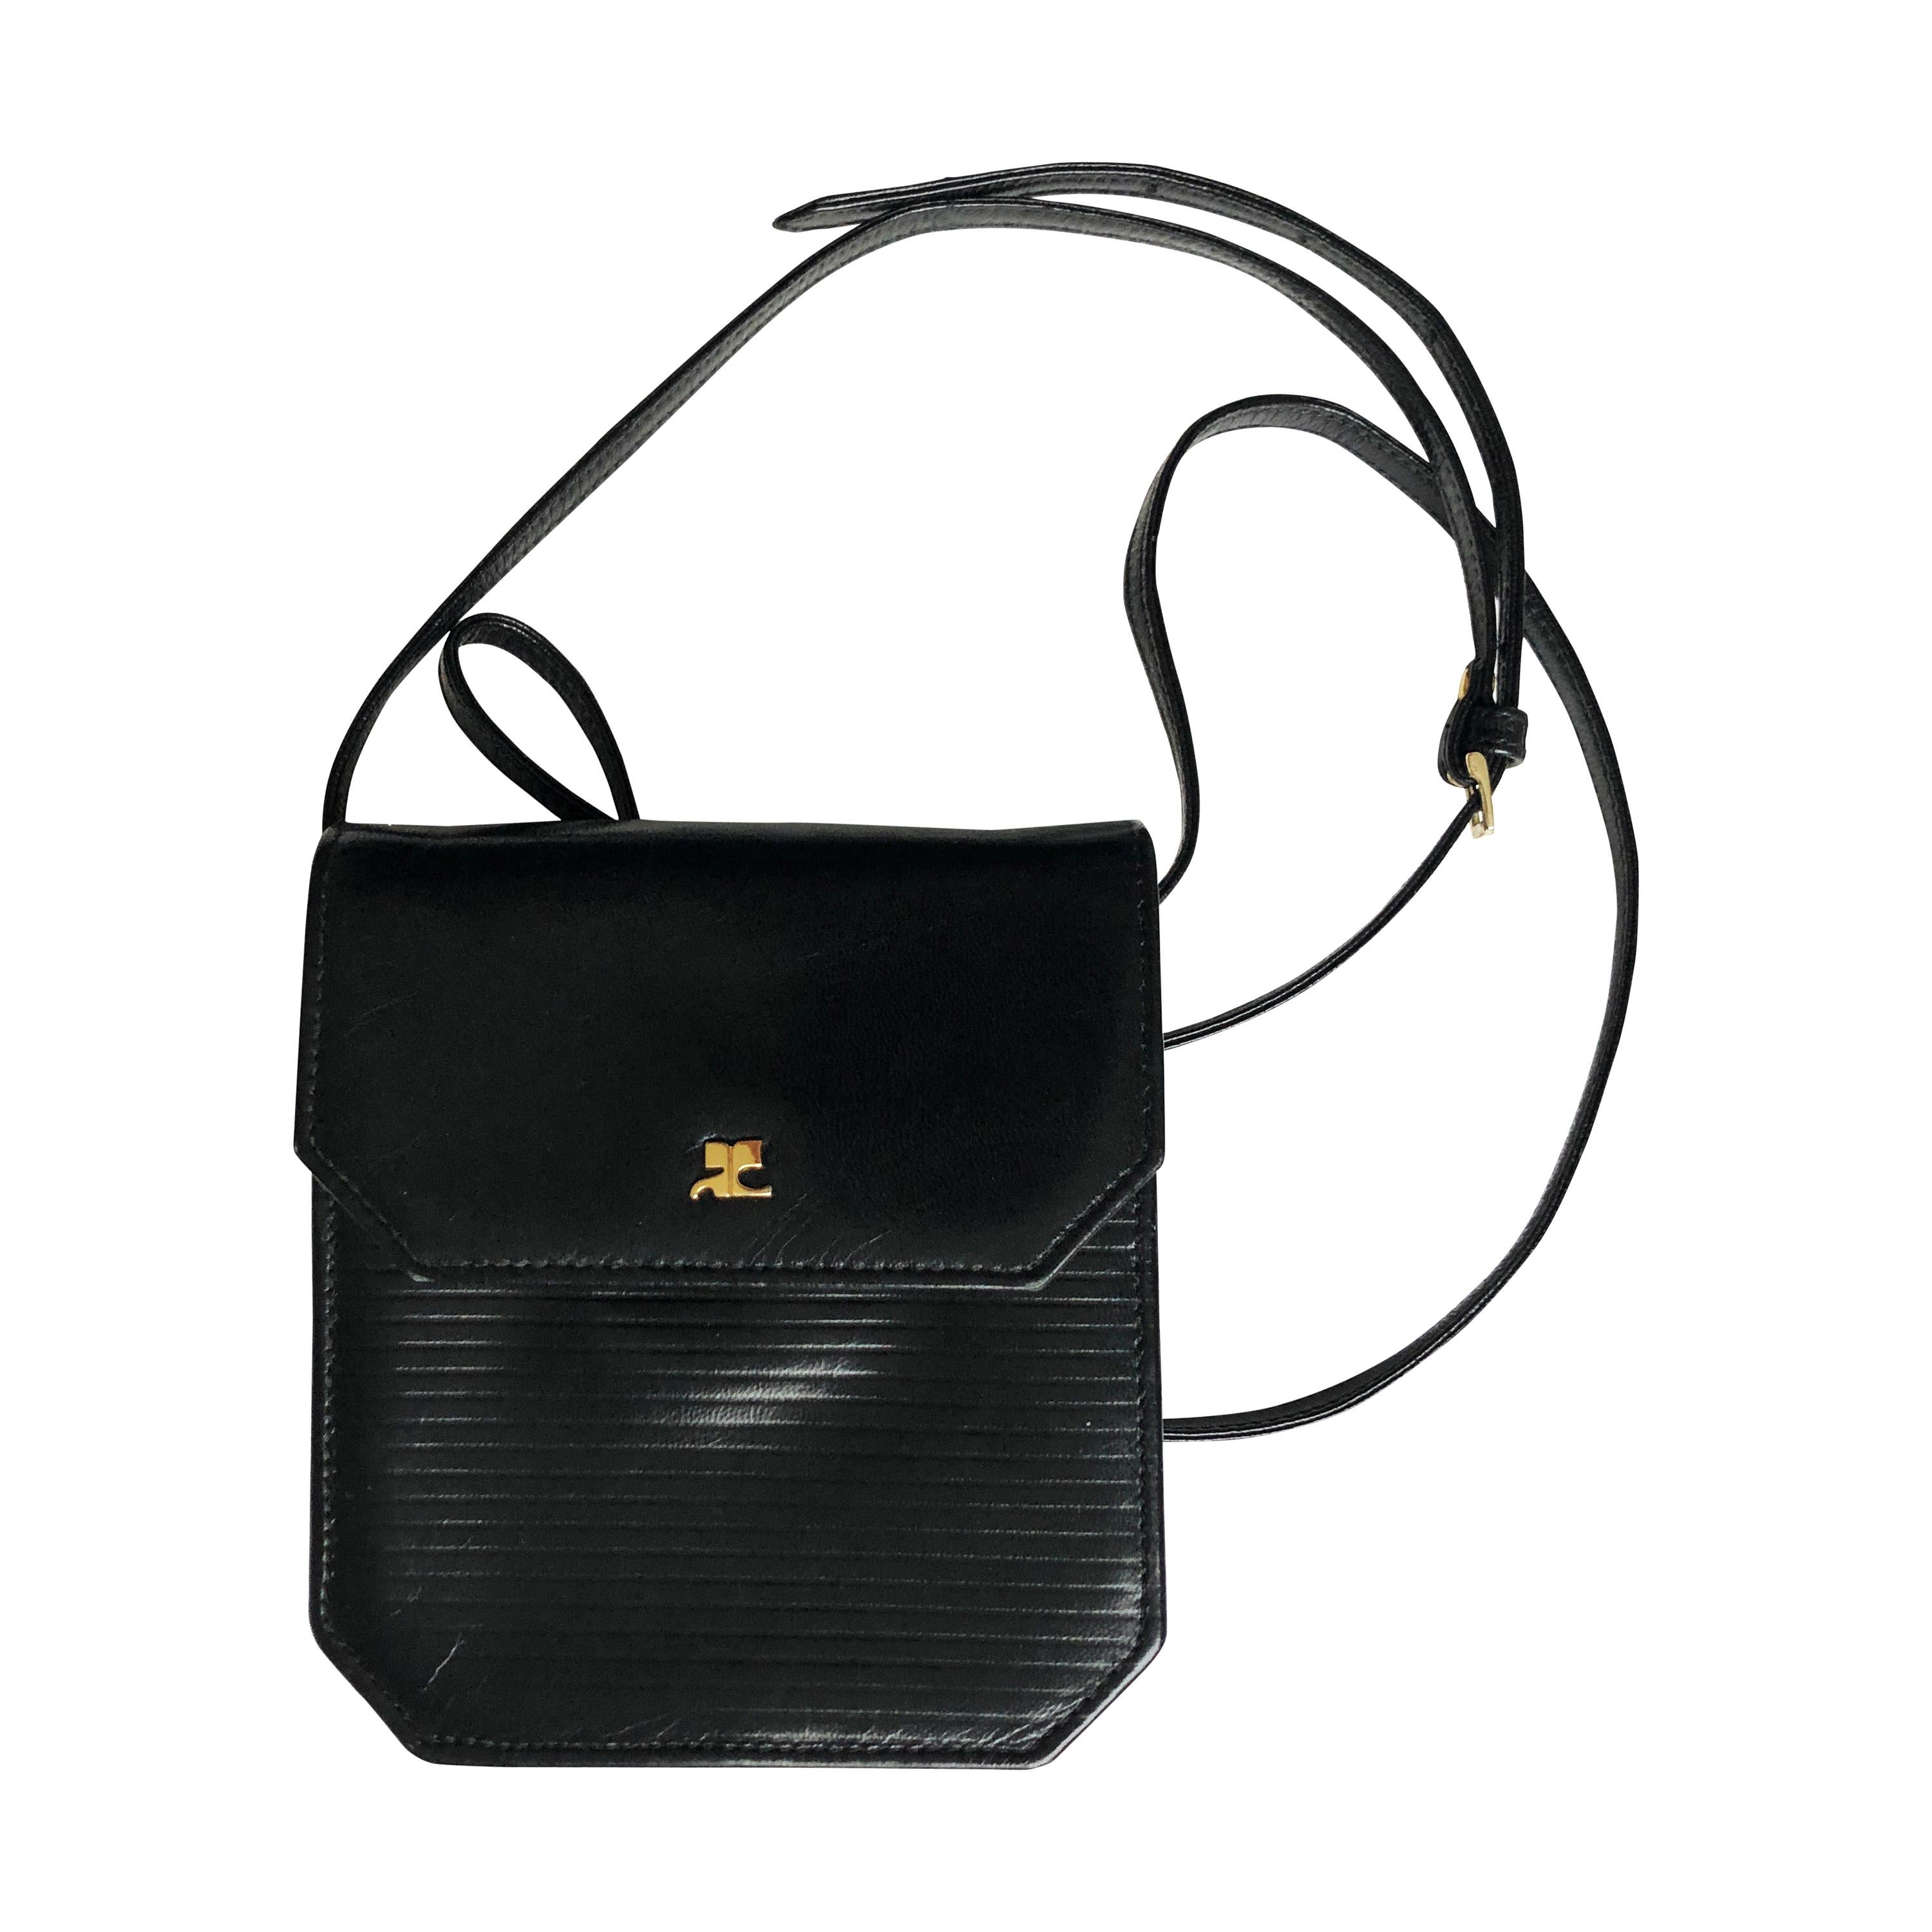 Courrèges Paris Bag Messenger Vintage Crossbody Black Leather 